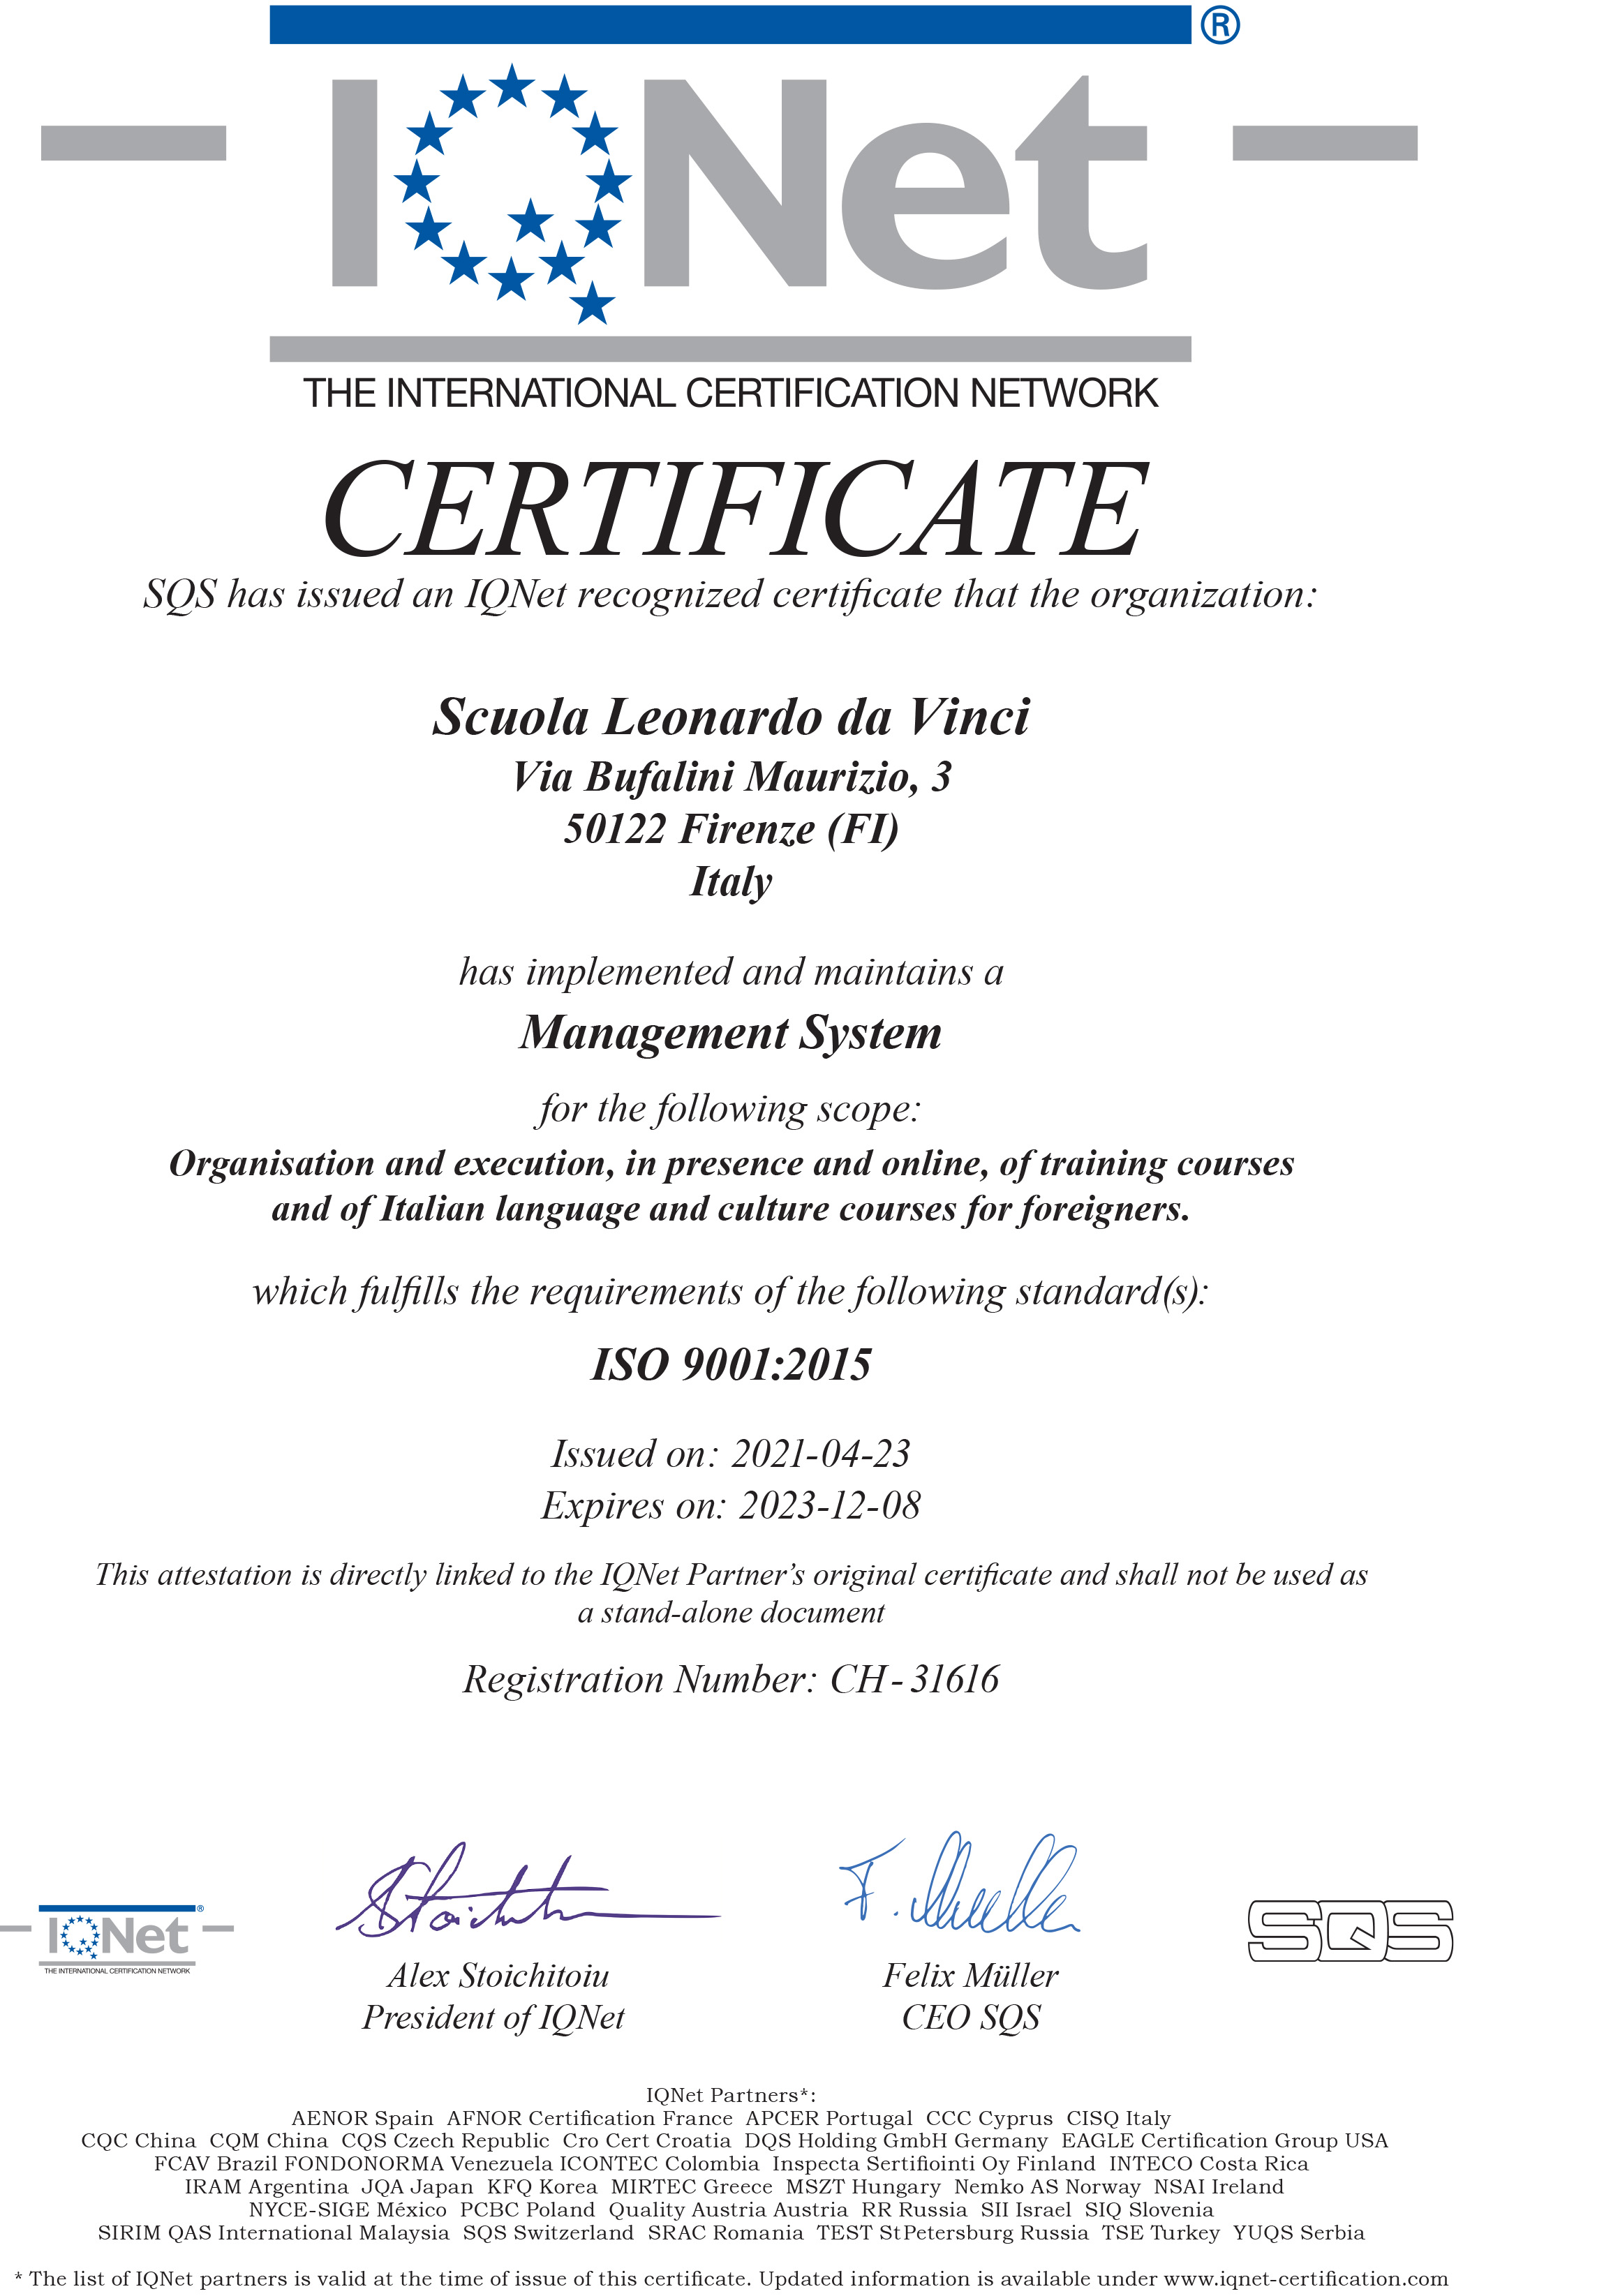 Notre école italienne à Florence est certifiée conforme à la norme ISO 9001: 2015, la norme internationalement reconnue pour les systèmes de gestion de la qualité